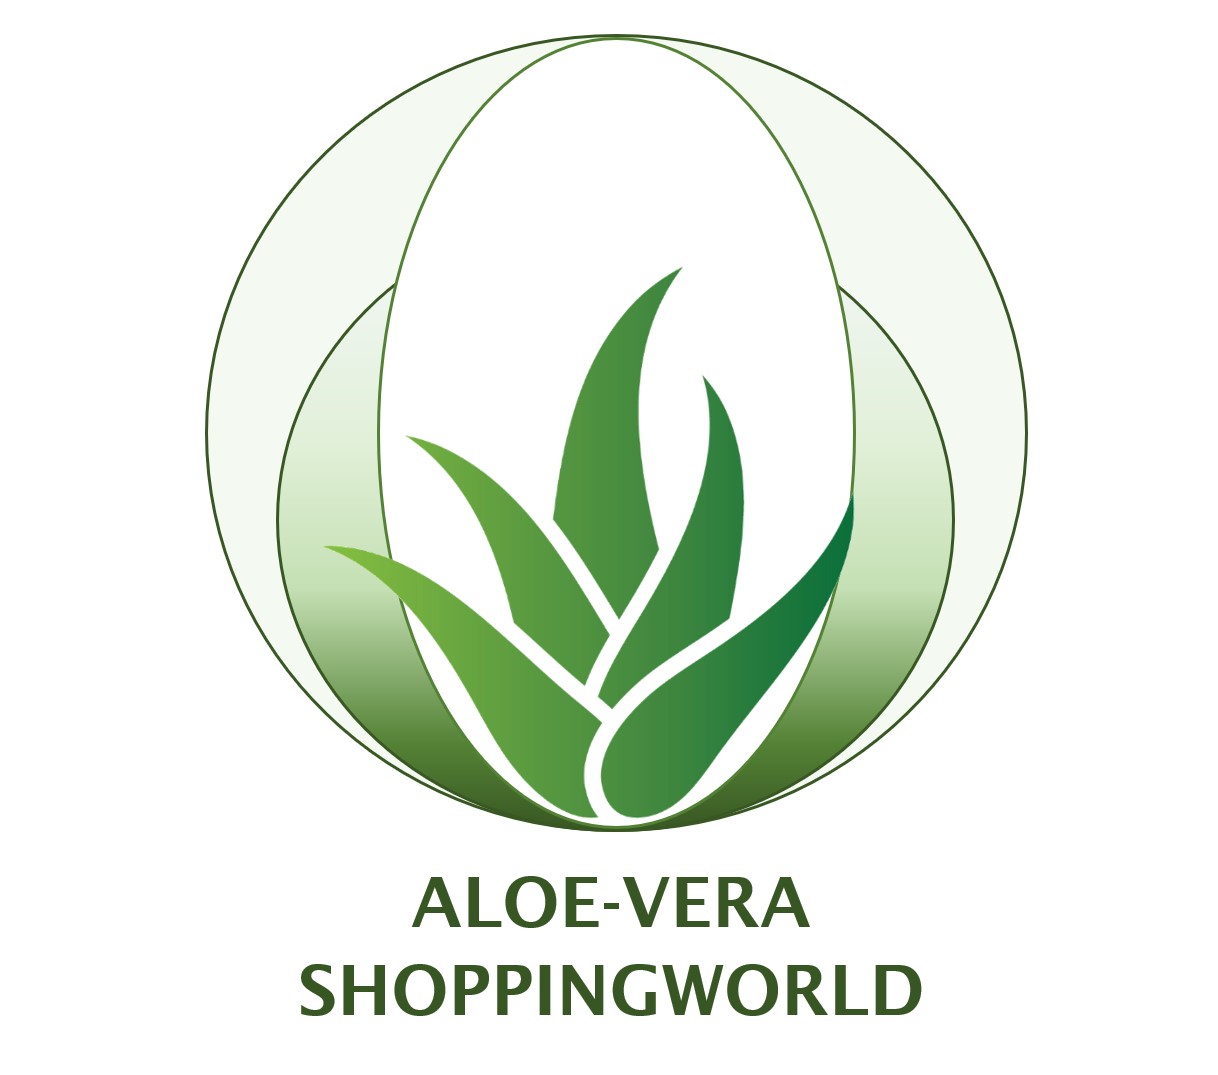 Aloe-Vera Shoppingworld